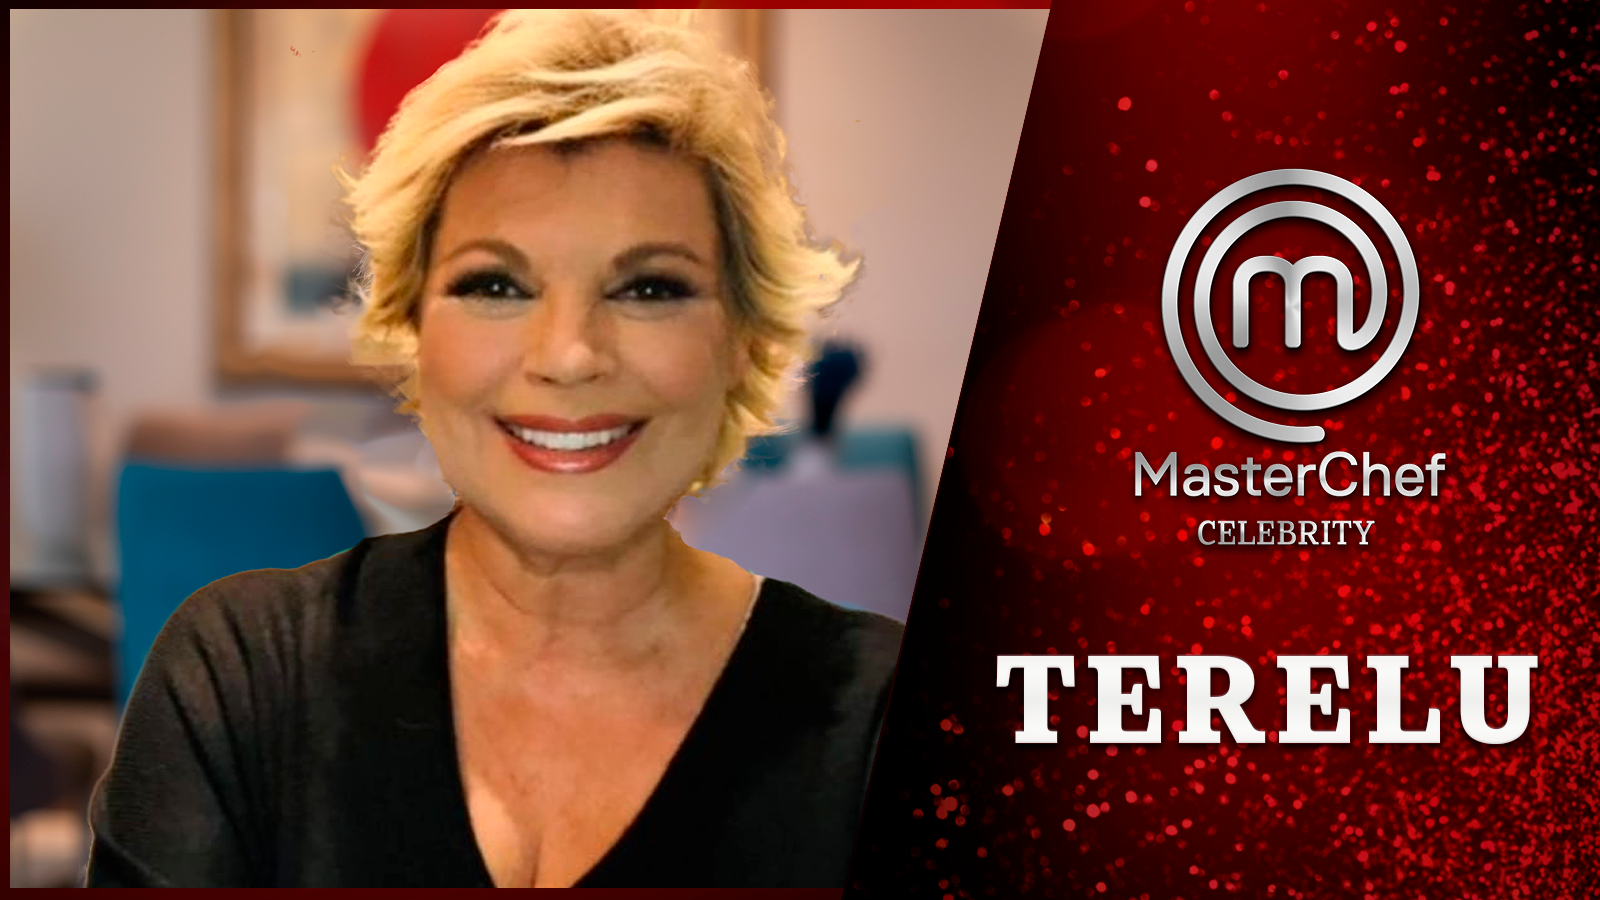 Terelu Campos, concursante confirmada para la sexta edición de MasterChef Celebrity